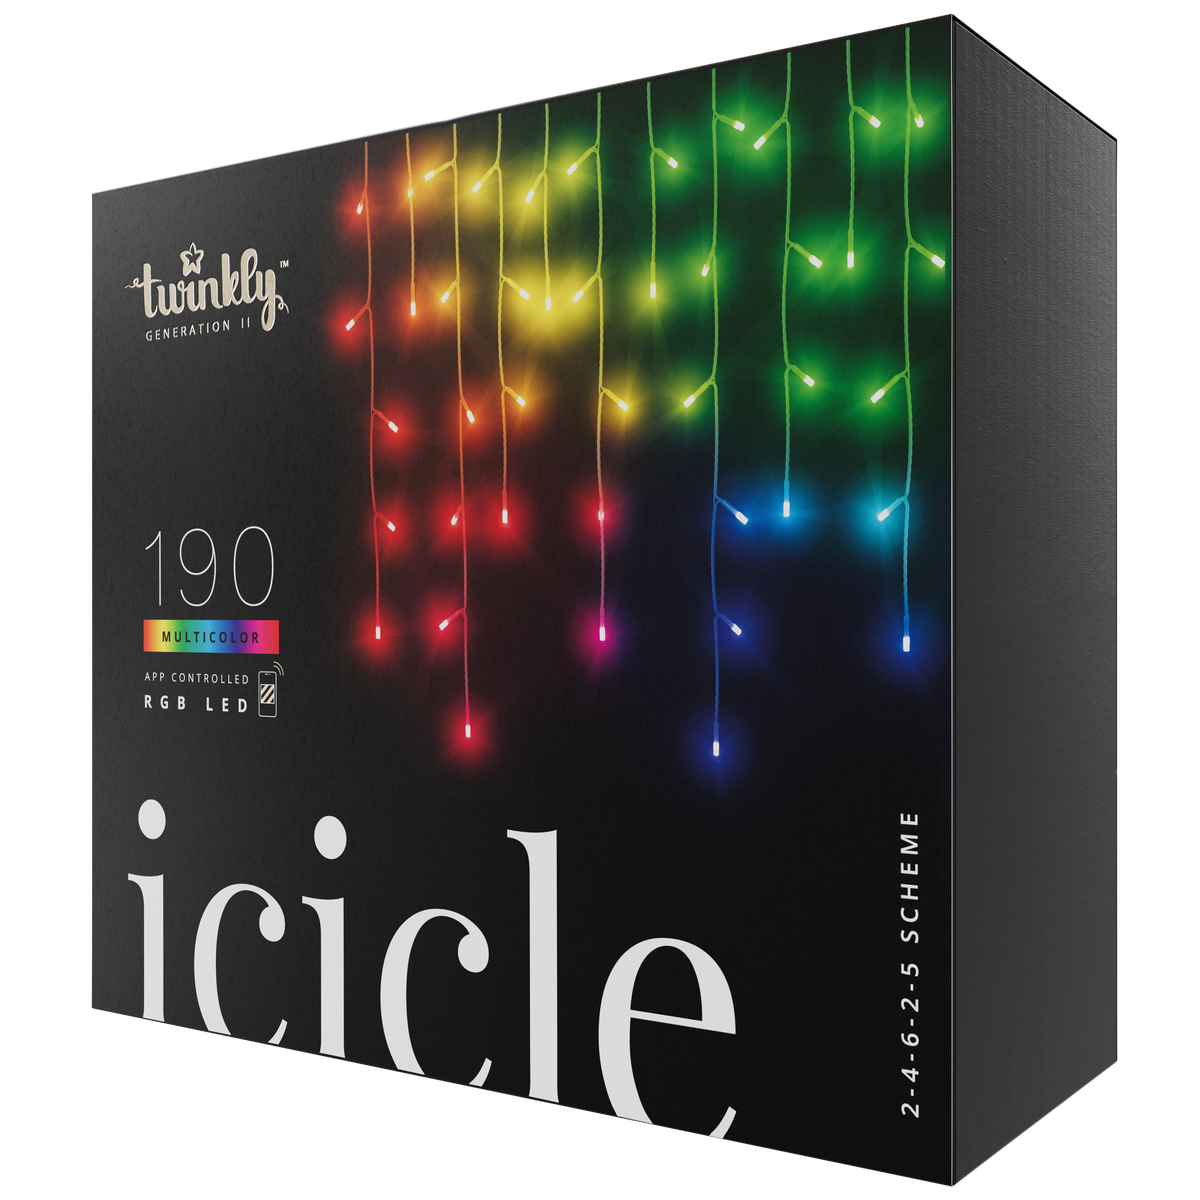 Icicle (edizione multicolore)